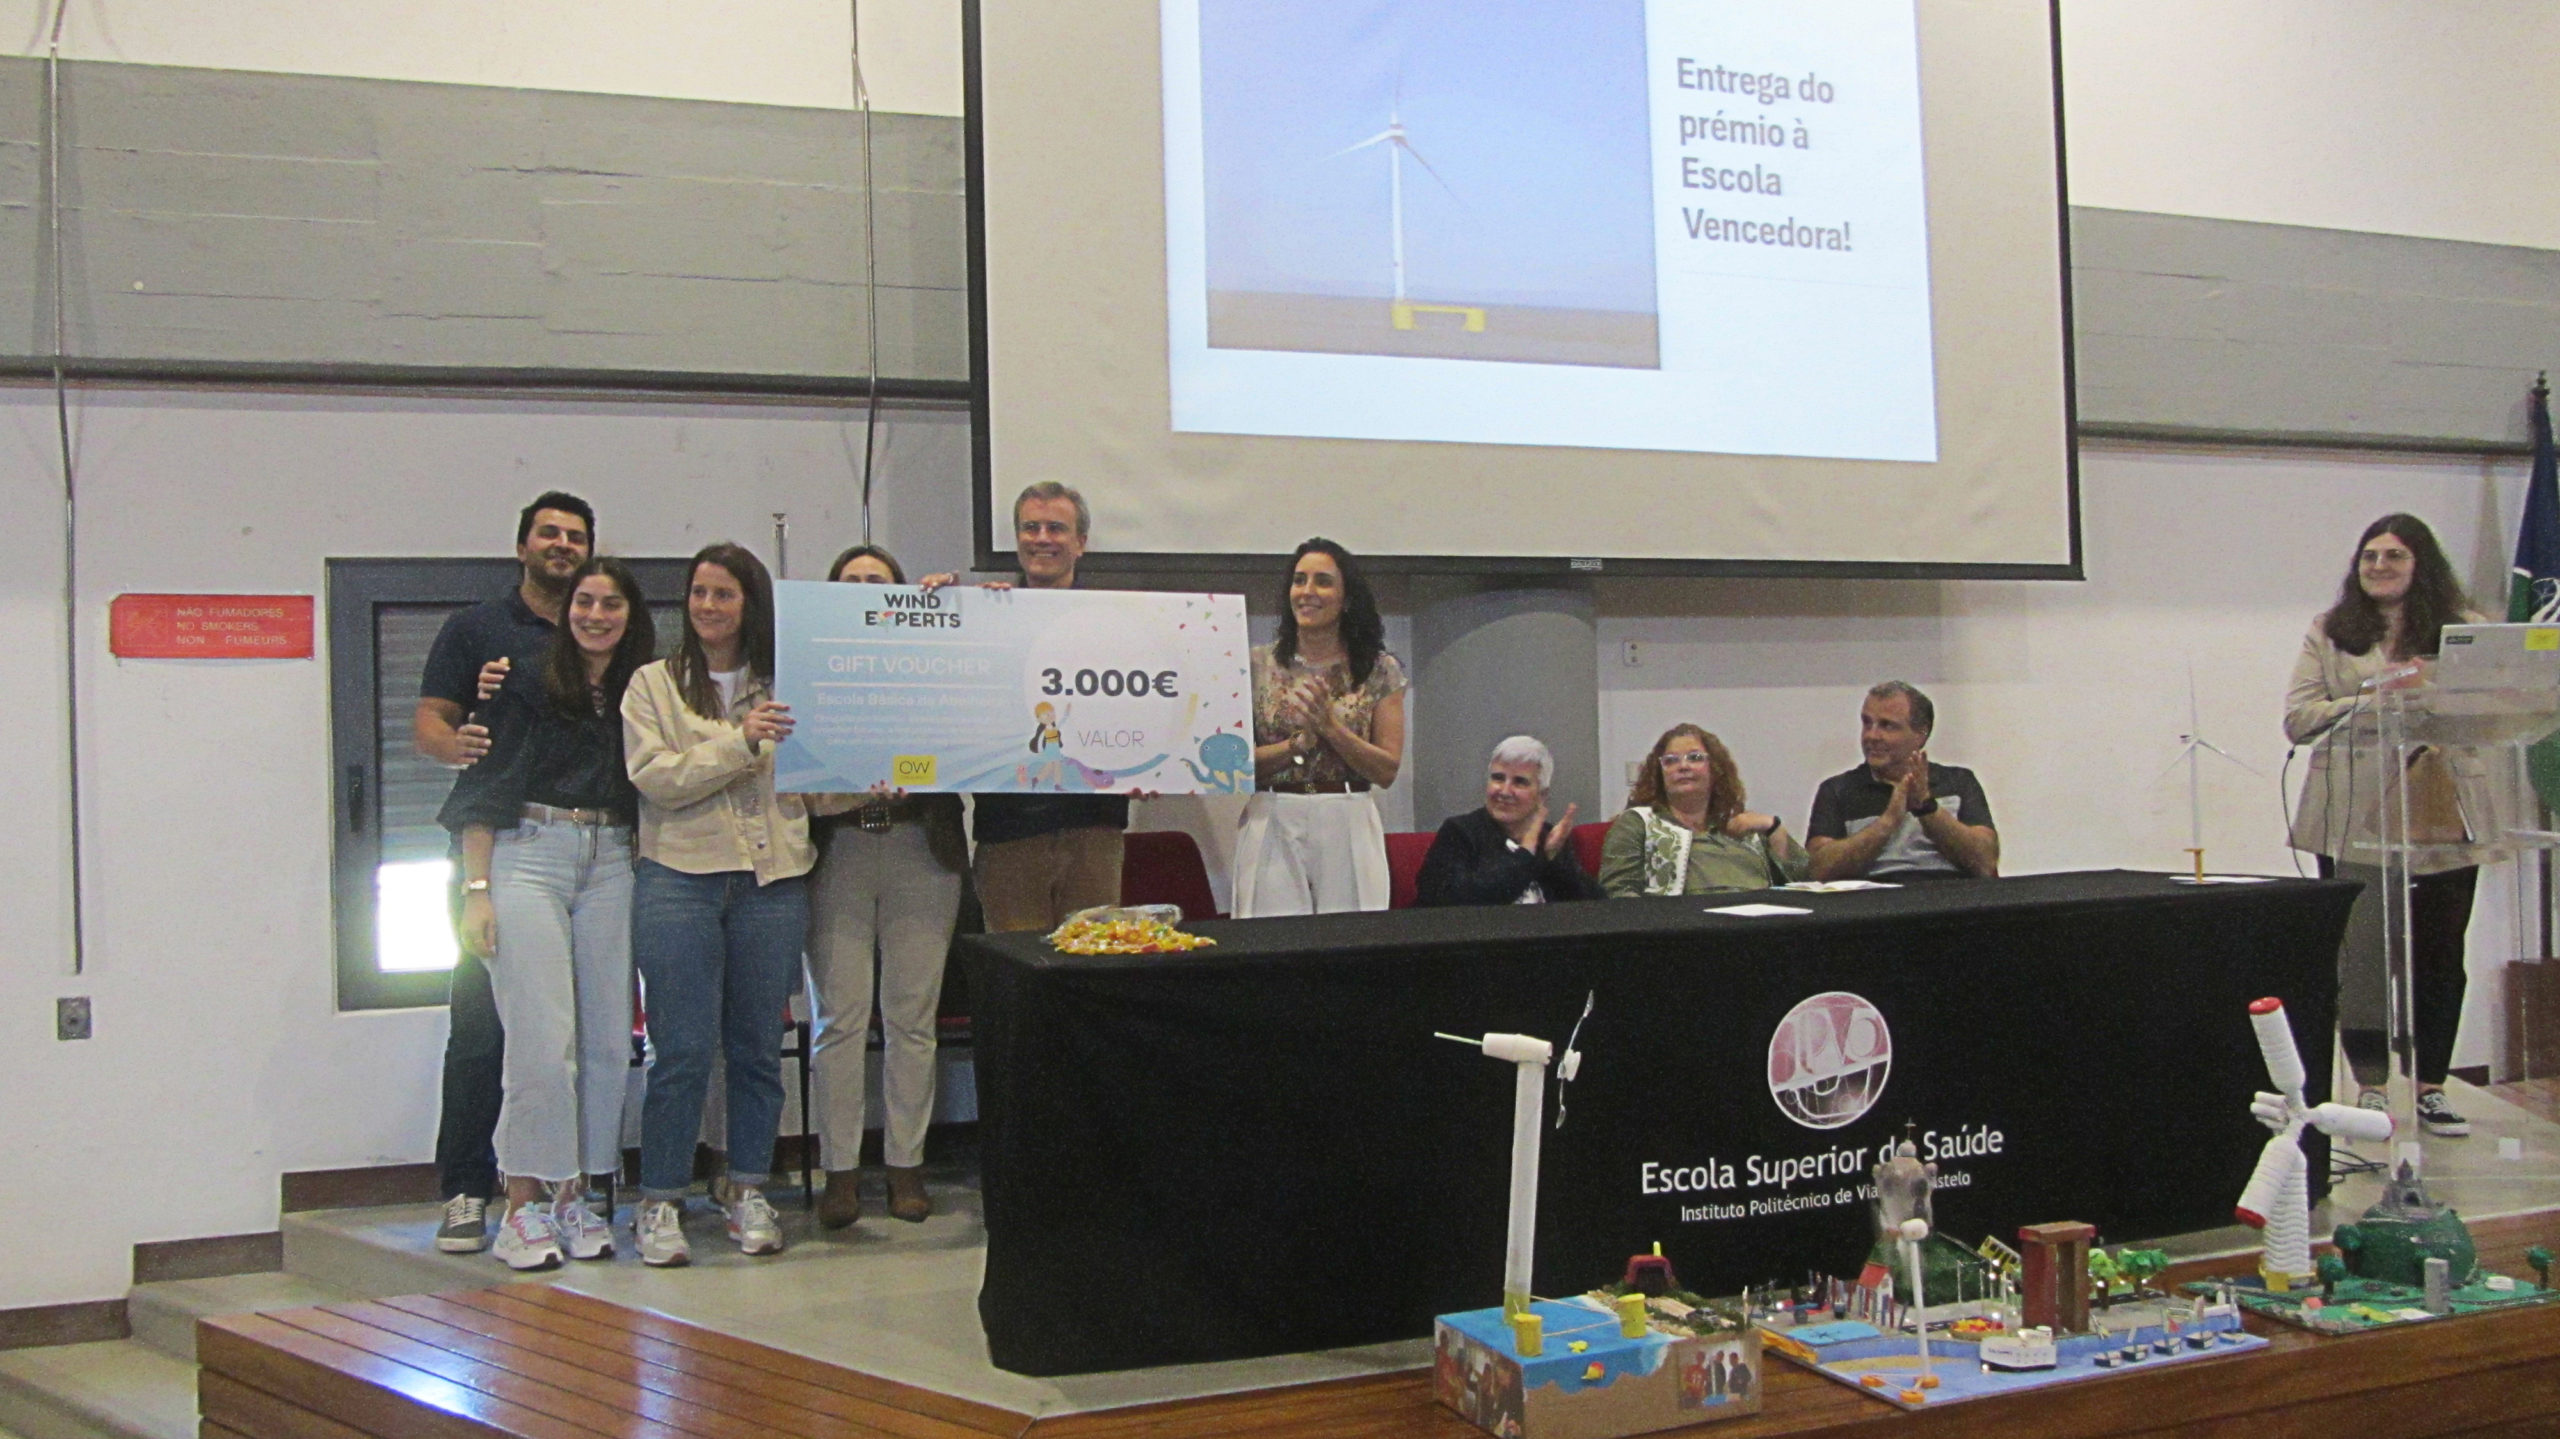 A Ocean Winds anuncia o vencedor do seu programa educa-tivo “Wind Experts” em Viana do Castelo